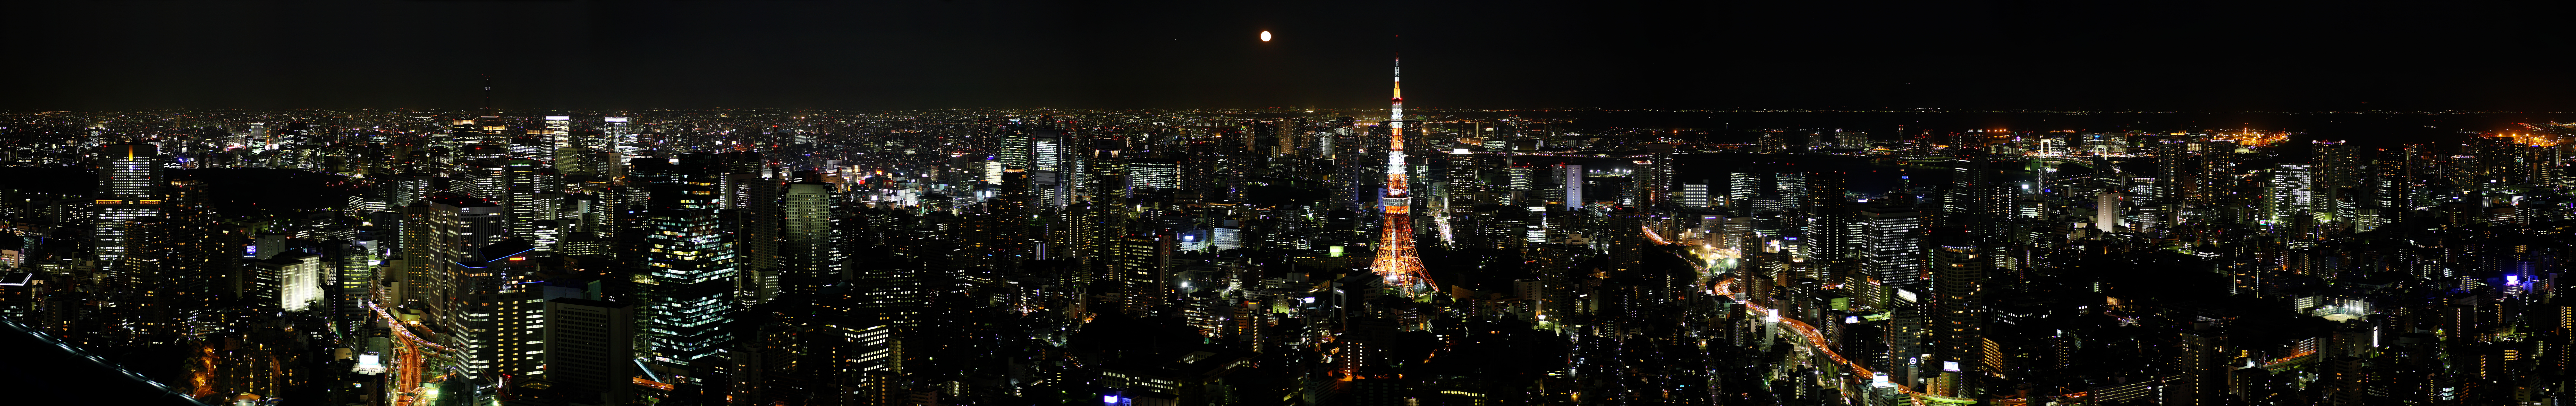 fotografia, material, livra, ajardine, imagine, proveja fotografia,Panorama de Tquio, Torre de Tquio, edifcio de edifcio alto, cidade grande, viso de cavaleiro